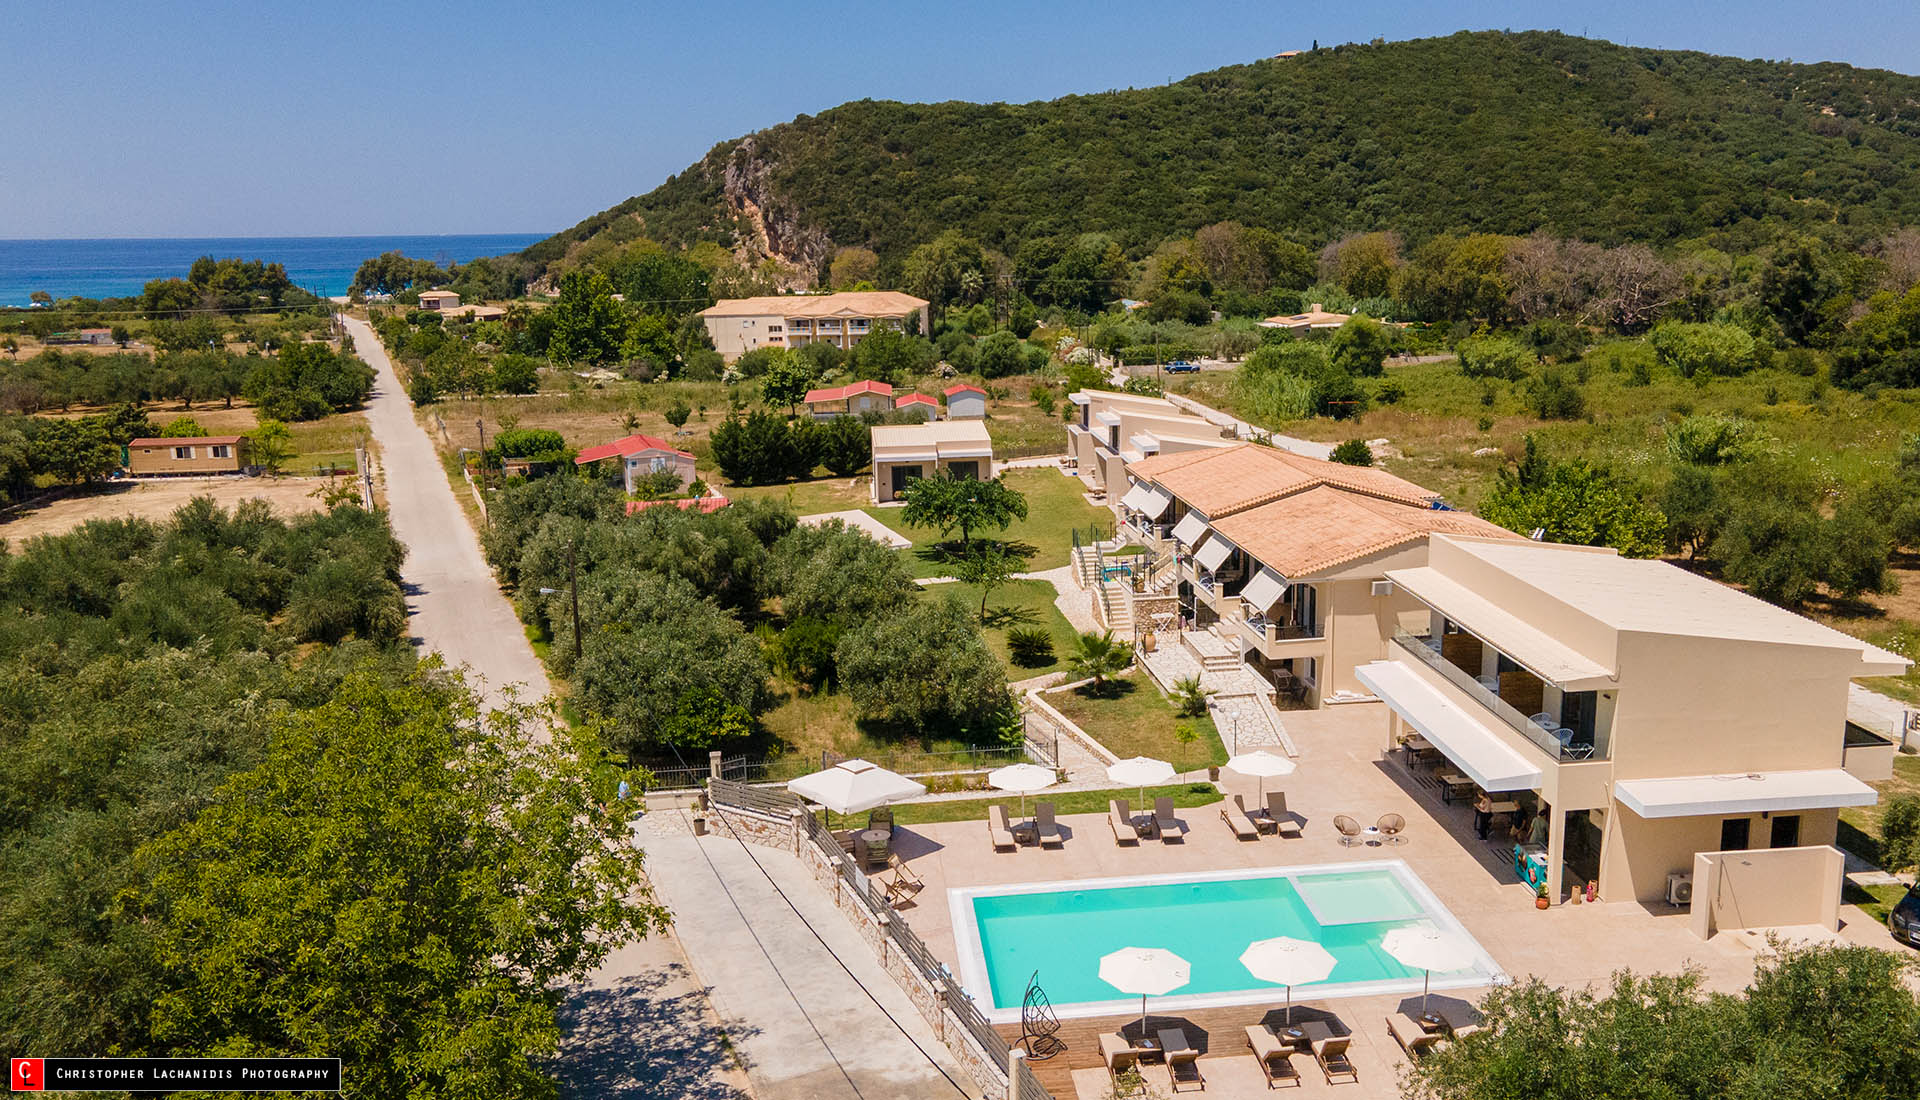 Villa Rania - Rooms and Apartments for rent Karavostasi Beach Perdika Thesprotia Epirus Greece!